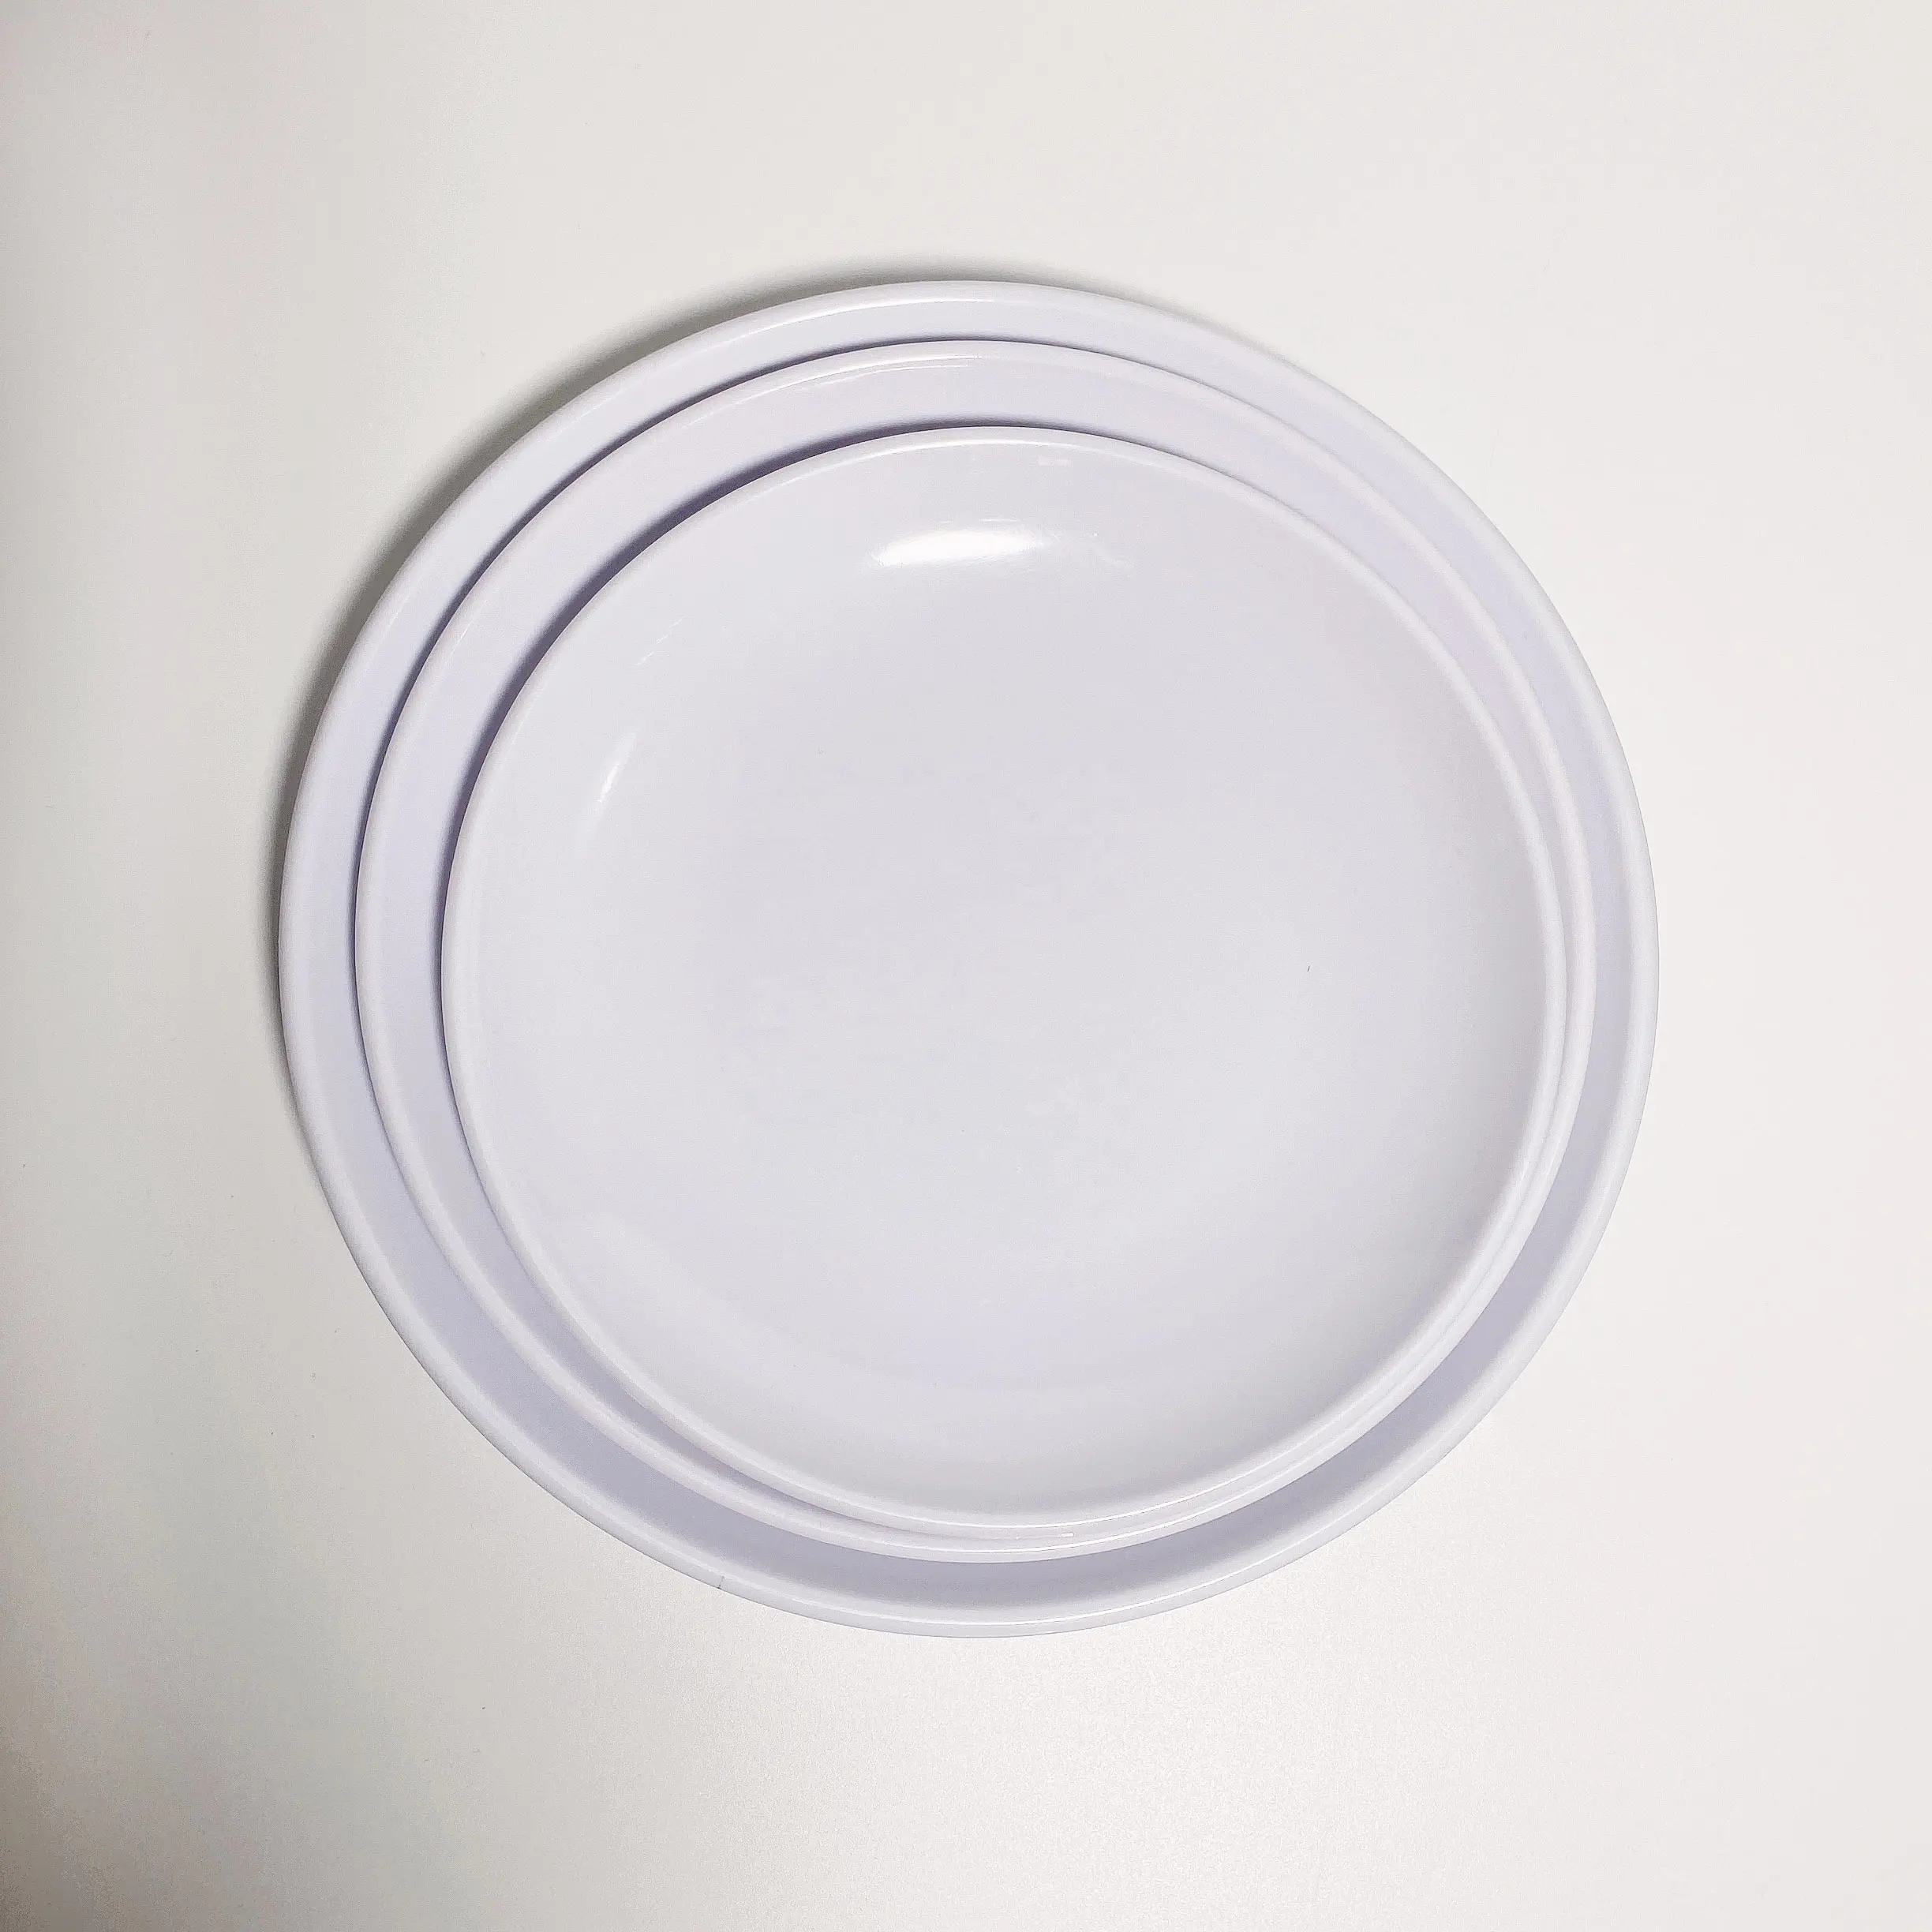 Placa inquebrável da melamina do produto comestível placa de jantar do restaurante do volume branco 8 9 10 polegadas